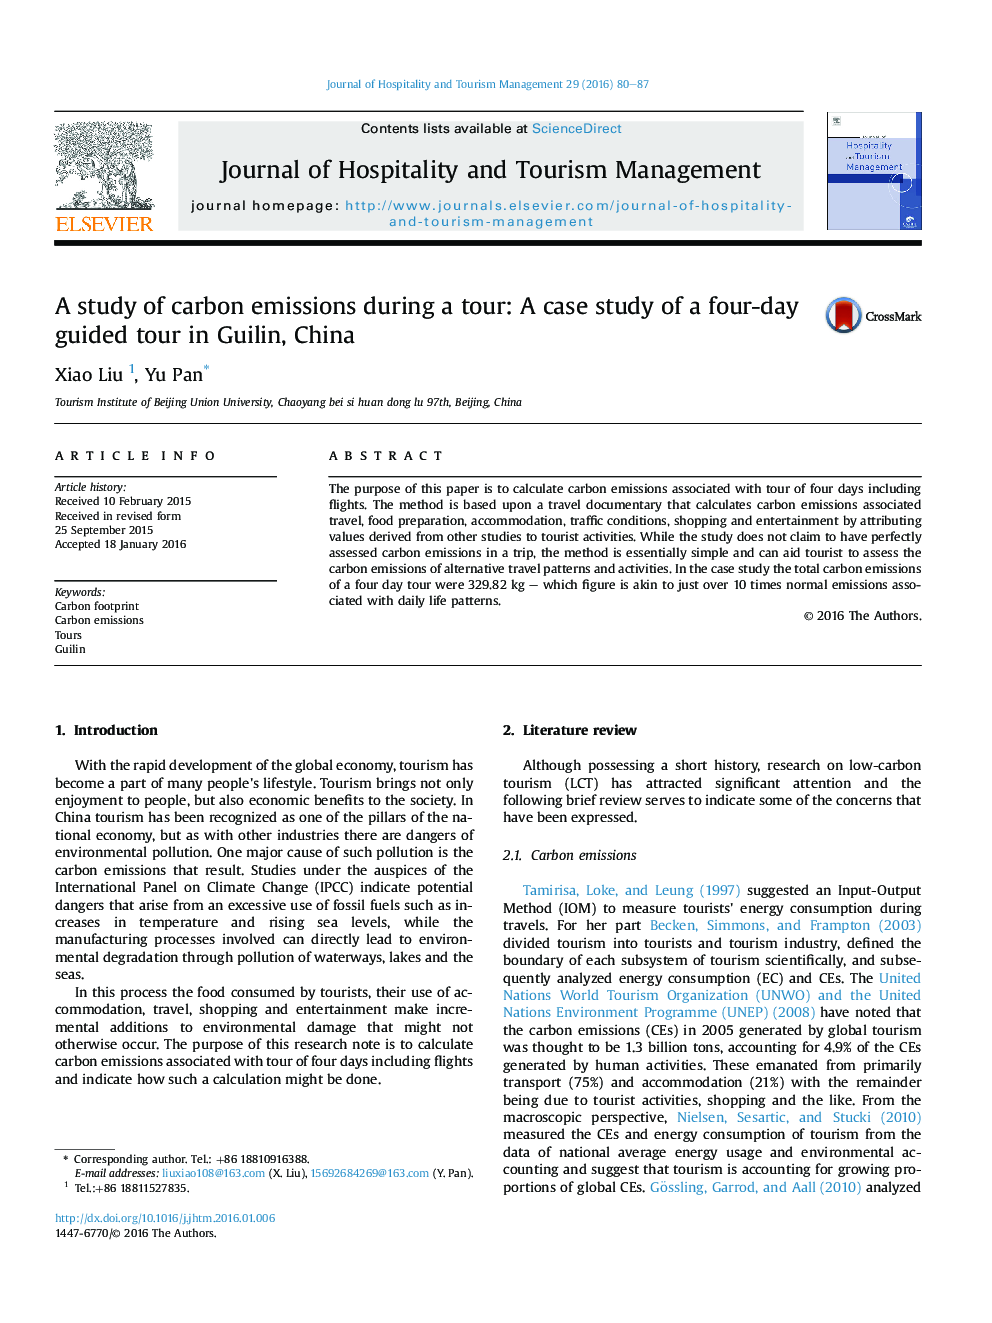 مطالعه انتشار کربن در طول یک تور: مطالعه موردی از یک تور با راهنما چهار روزه در گیلین چین